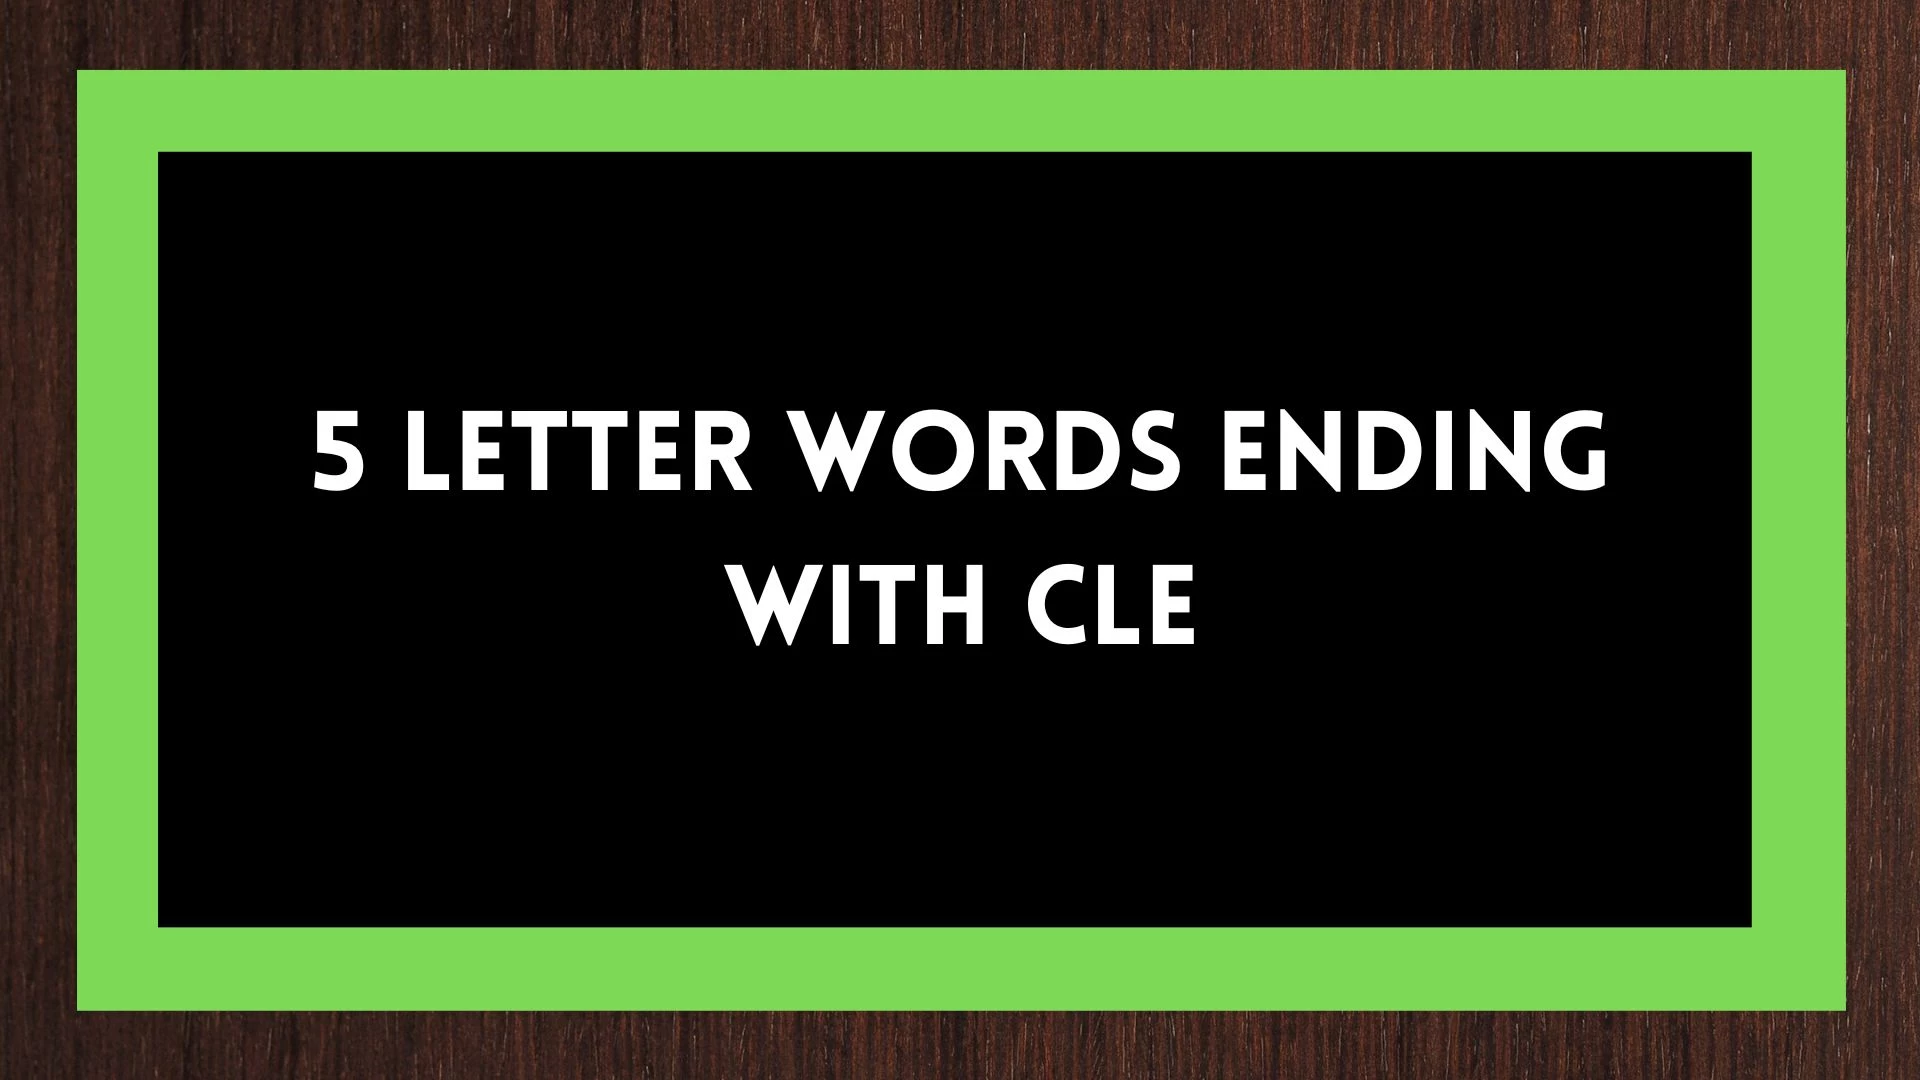 Palabras de 5 letras que terminen con CLE - Wordle Hint